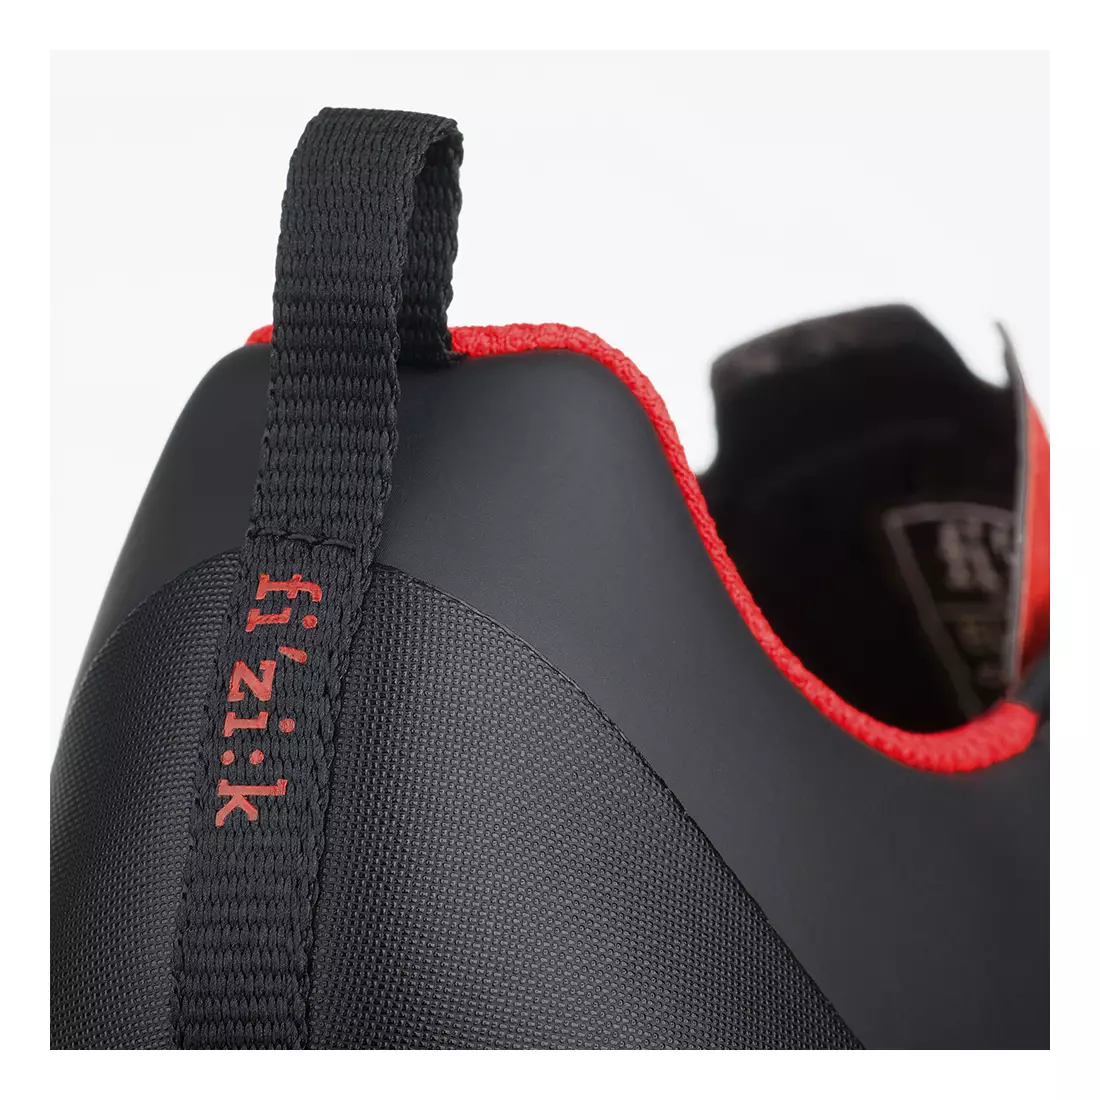 FIZIK Terra X5 mtb kerékpáros cipő fekete és piros